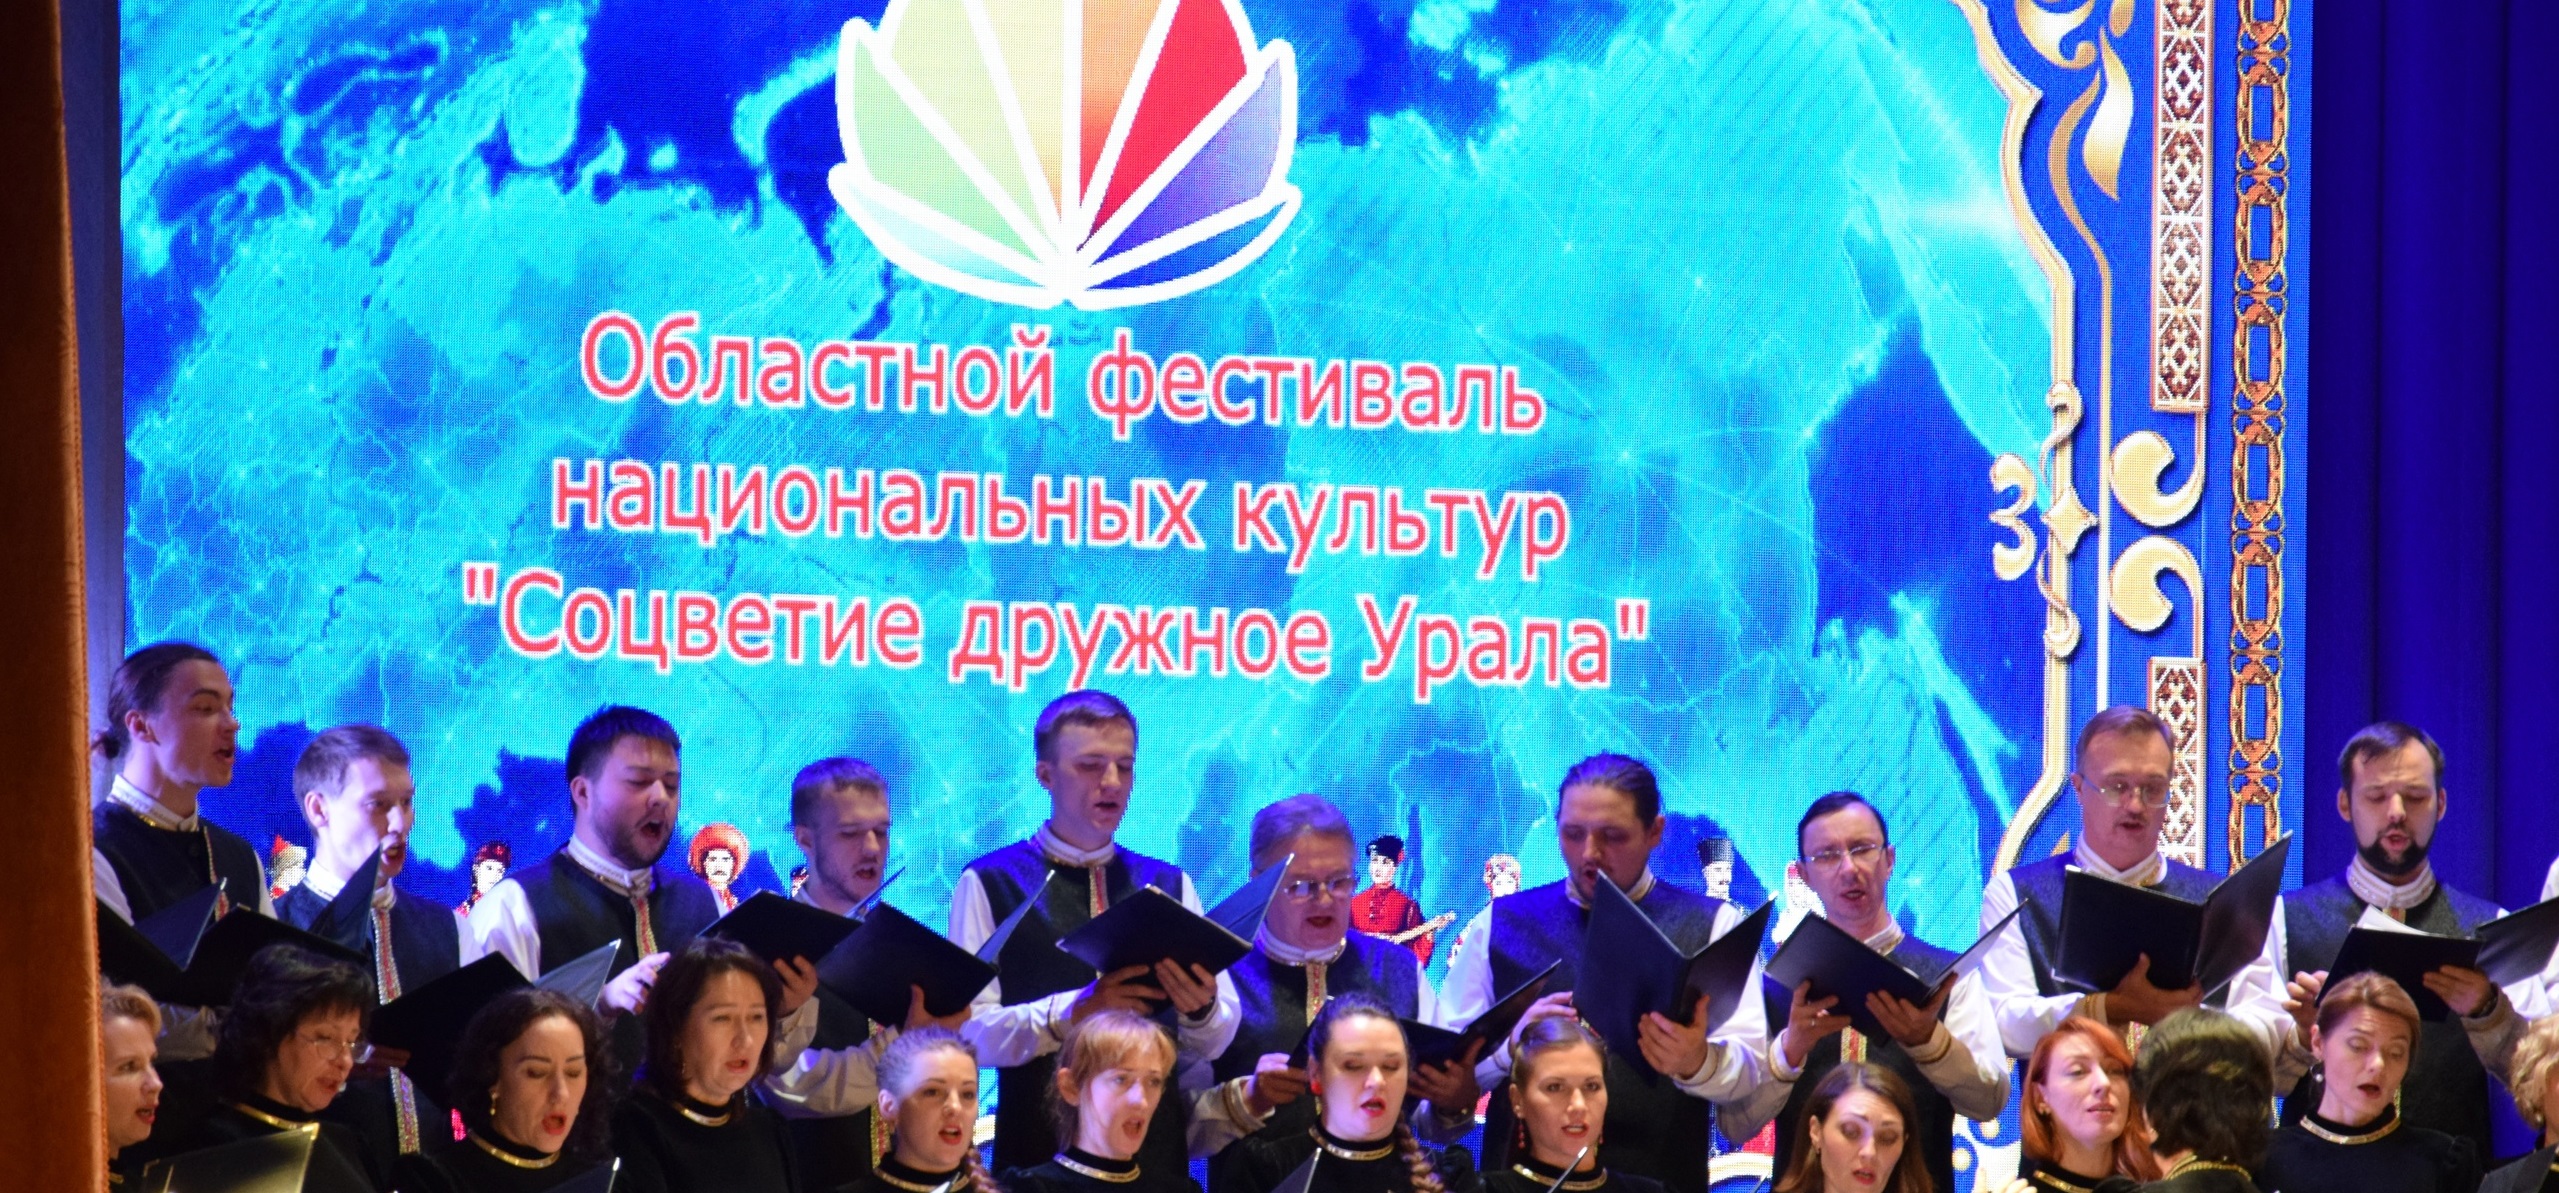 Областной фестиваль национальных культур «Соцветие дружное Урала» подводит итоги